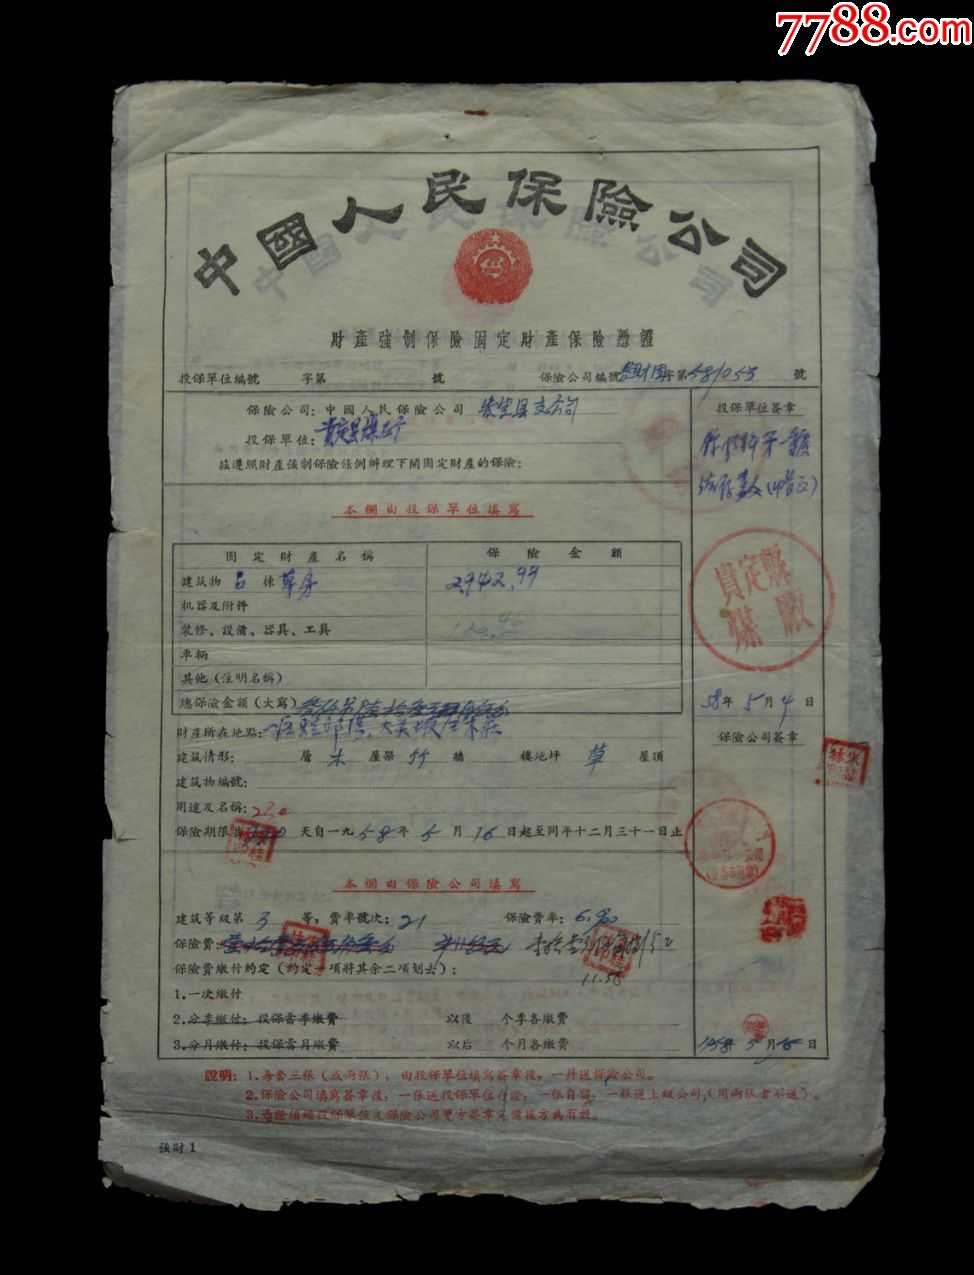 1958年:贵定县煤厂在中国人民保险公司【财产强制保险单】两张